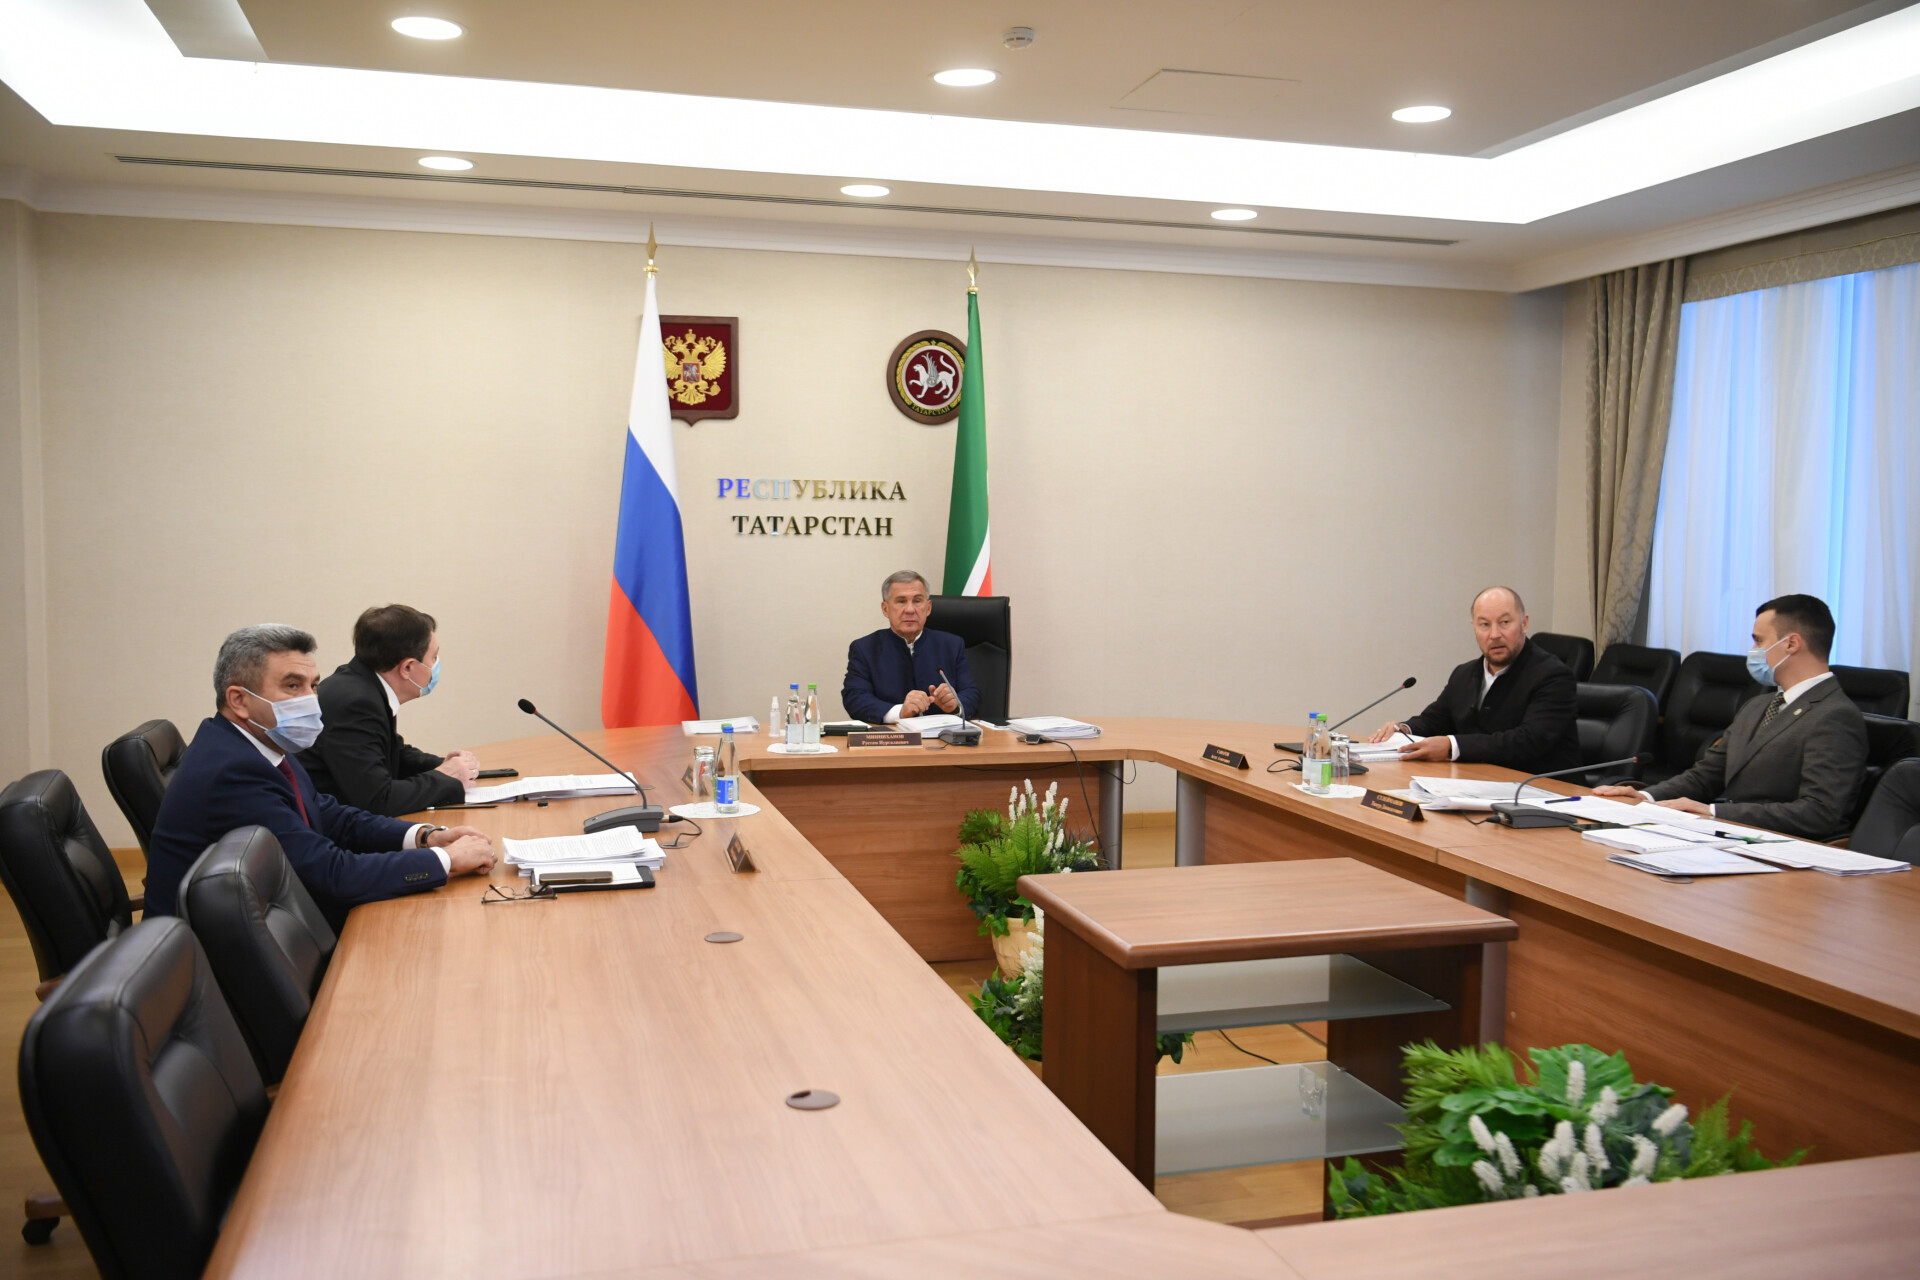 Минниханов принял участие в обсуждении вопросов молодежной политики в Приволжье